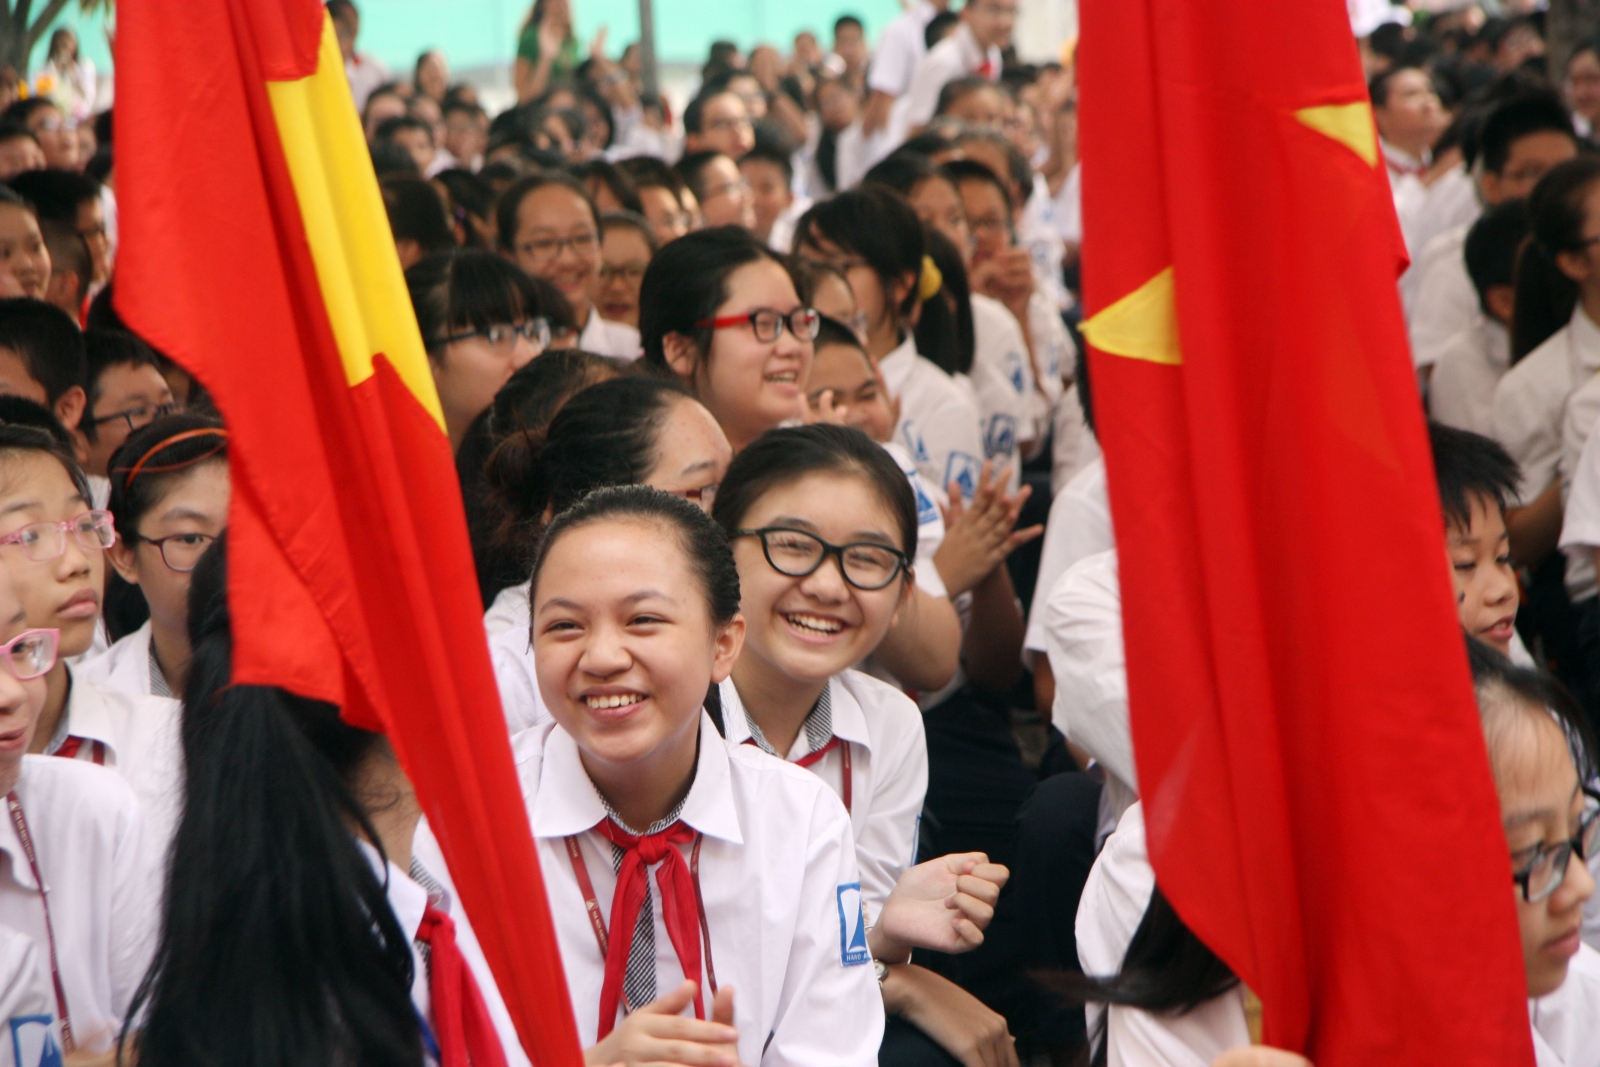 Hà Nội: Gần hết hạn tuyển sinh, nhiều trường vẫn thiếu chỉ tiêu